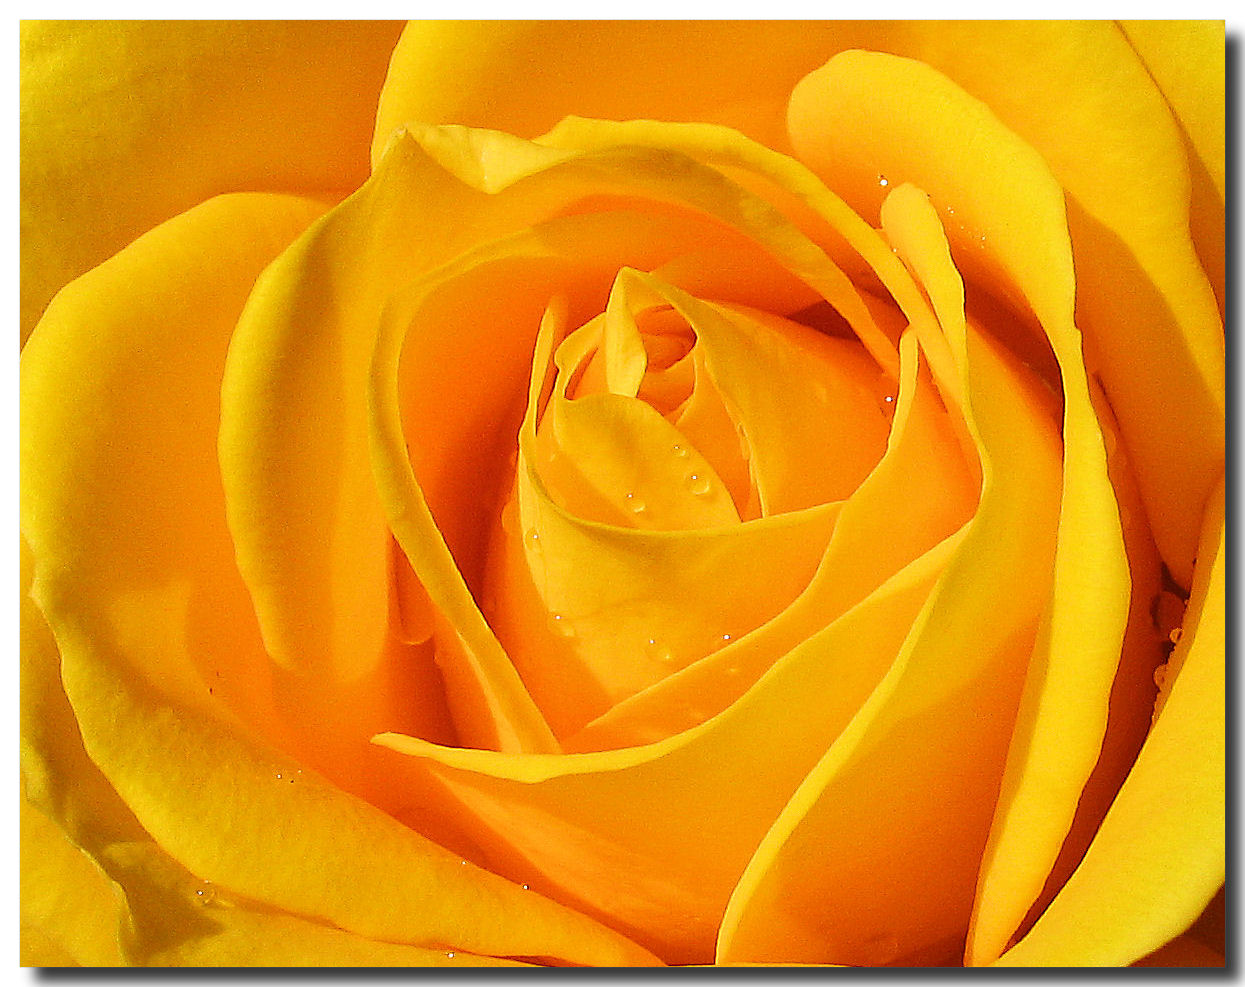 http://2.bp.blogspot.com/-3Geq0h_bW6Q/UFzL93aAggI/AAAAAAAAAEo/mTGeOiqB-Ws/s1600/yellow-rose-flowers-desktop-wallpapers-2.jpg